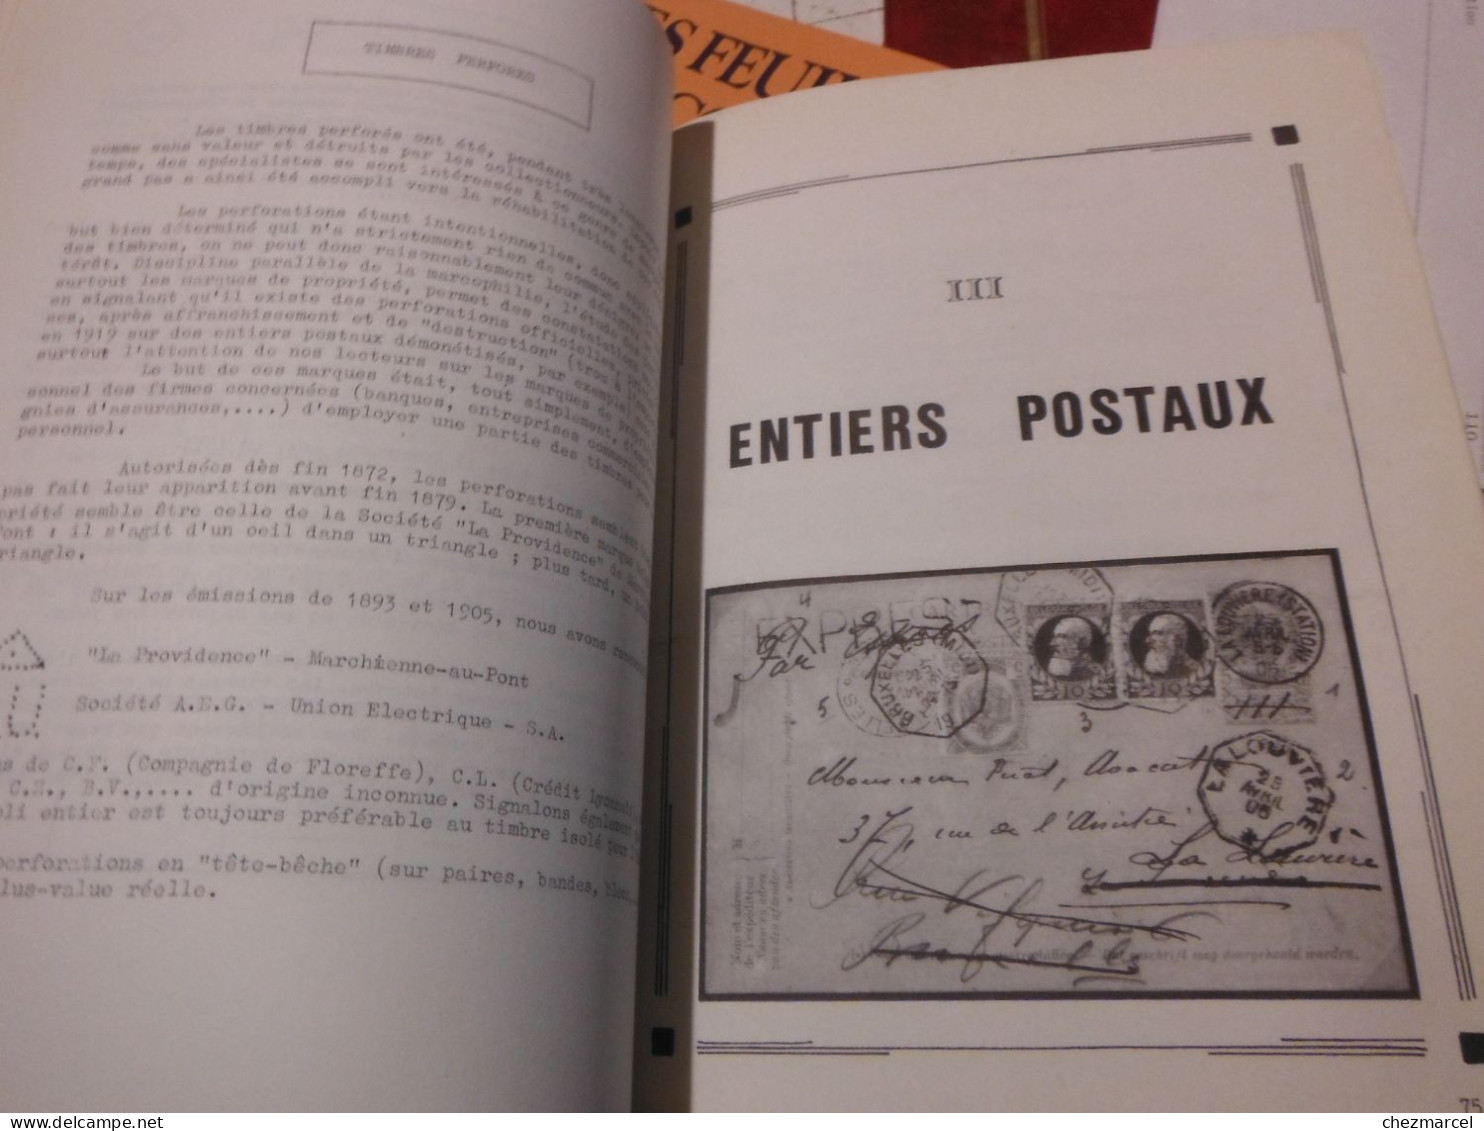 BELGIQUE-2 livres initiation aux classiques belges -les emissions de 1893 -1905 leurs marques postales